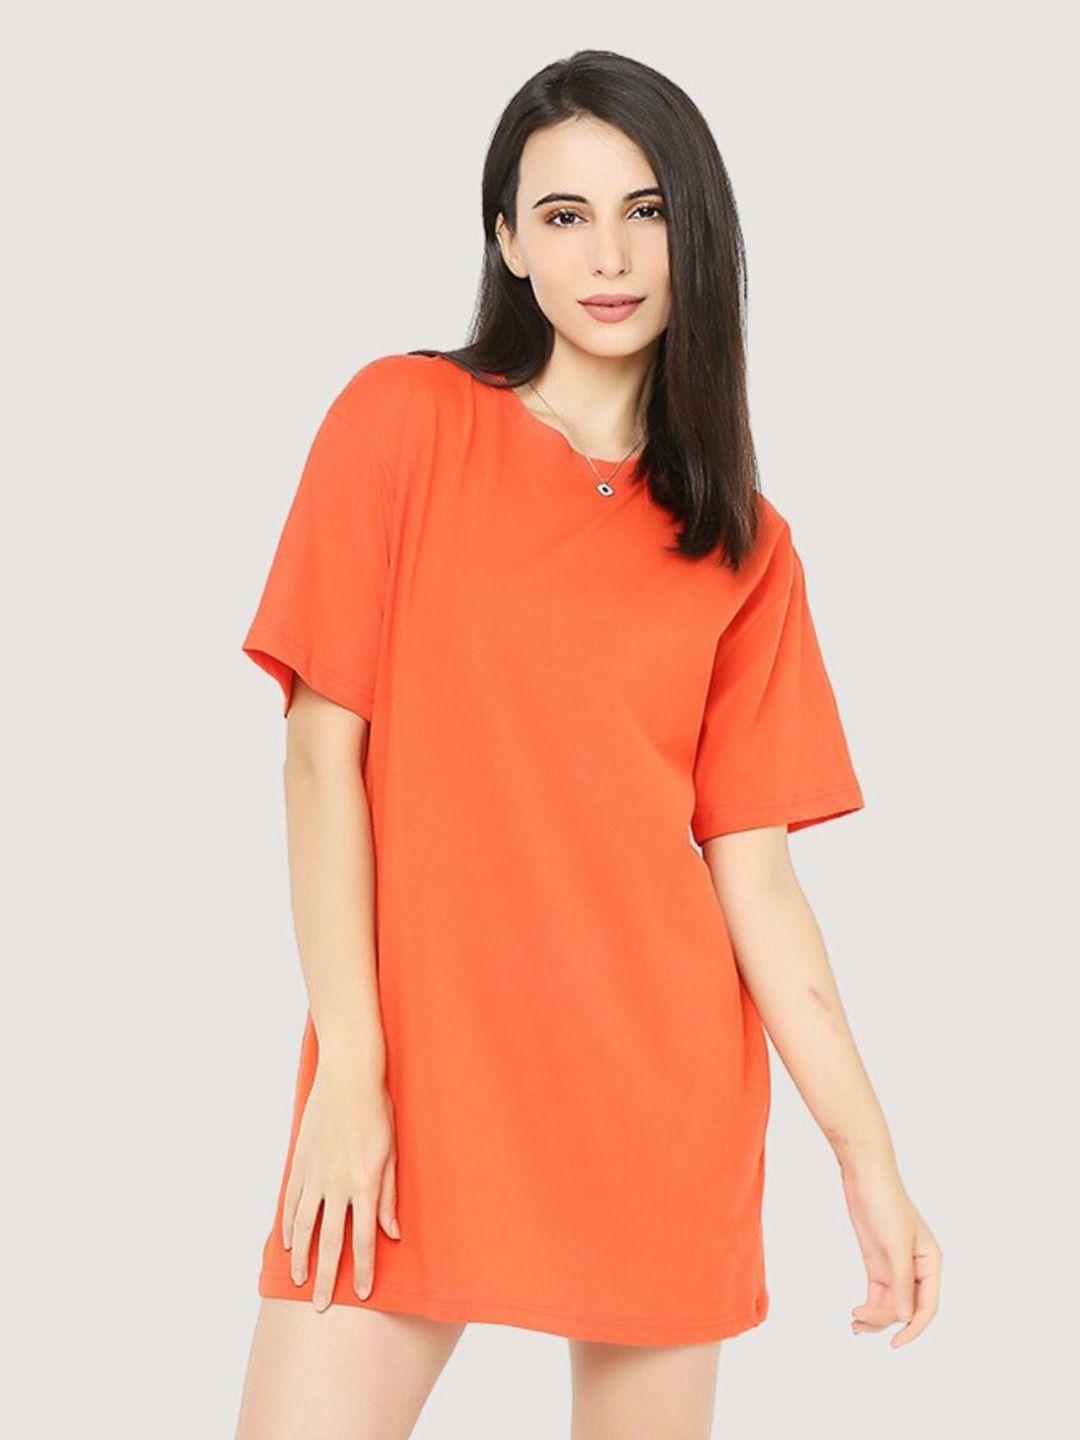 blancd women orange t-shirt